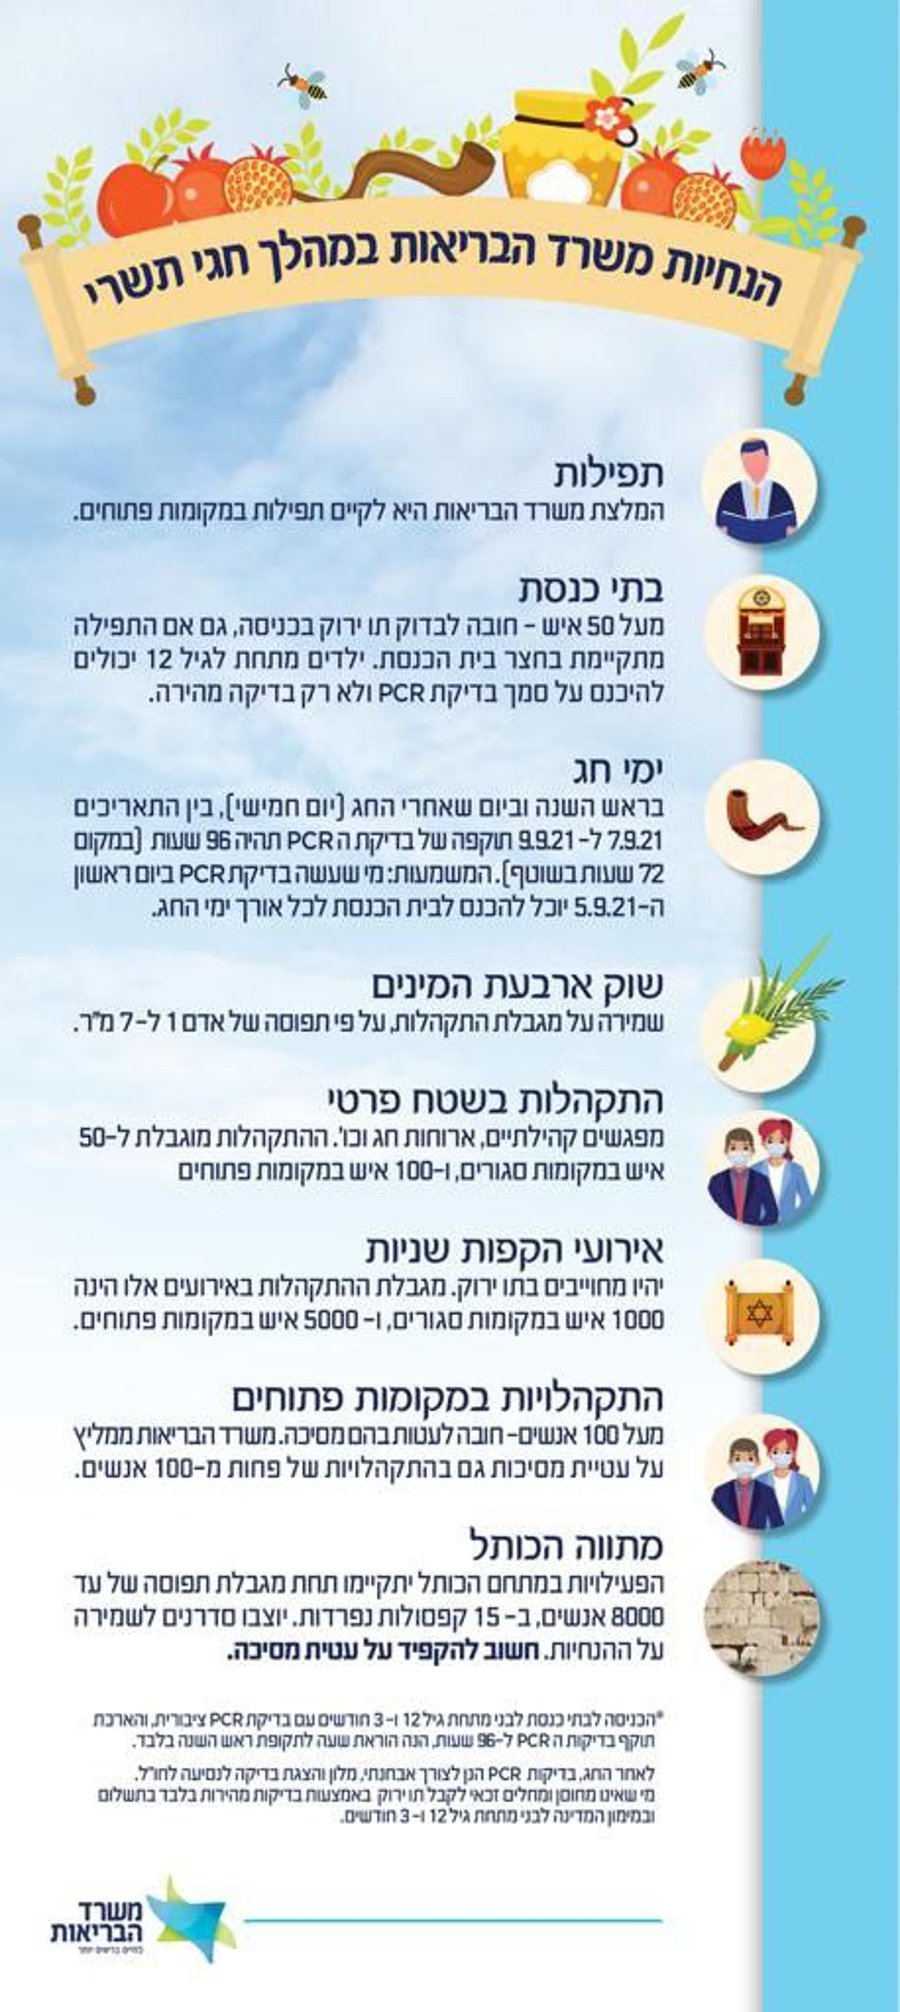 חגי תשרי: הנחיות משרד הבריאות לבתי הכנסת